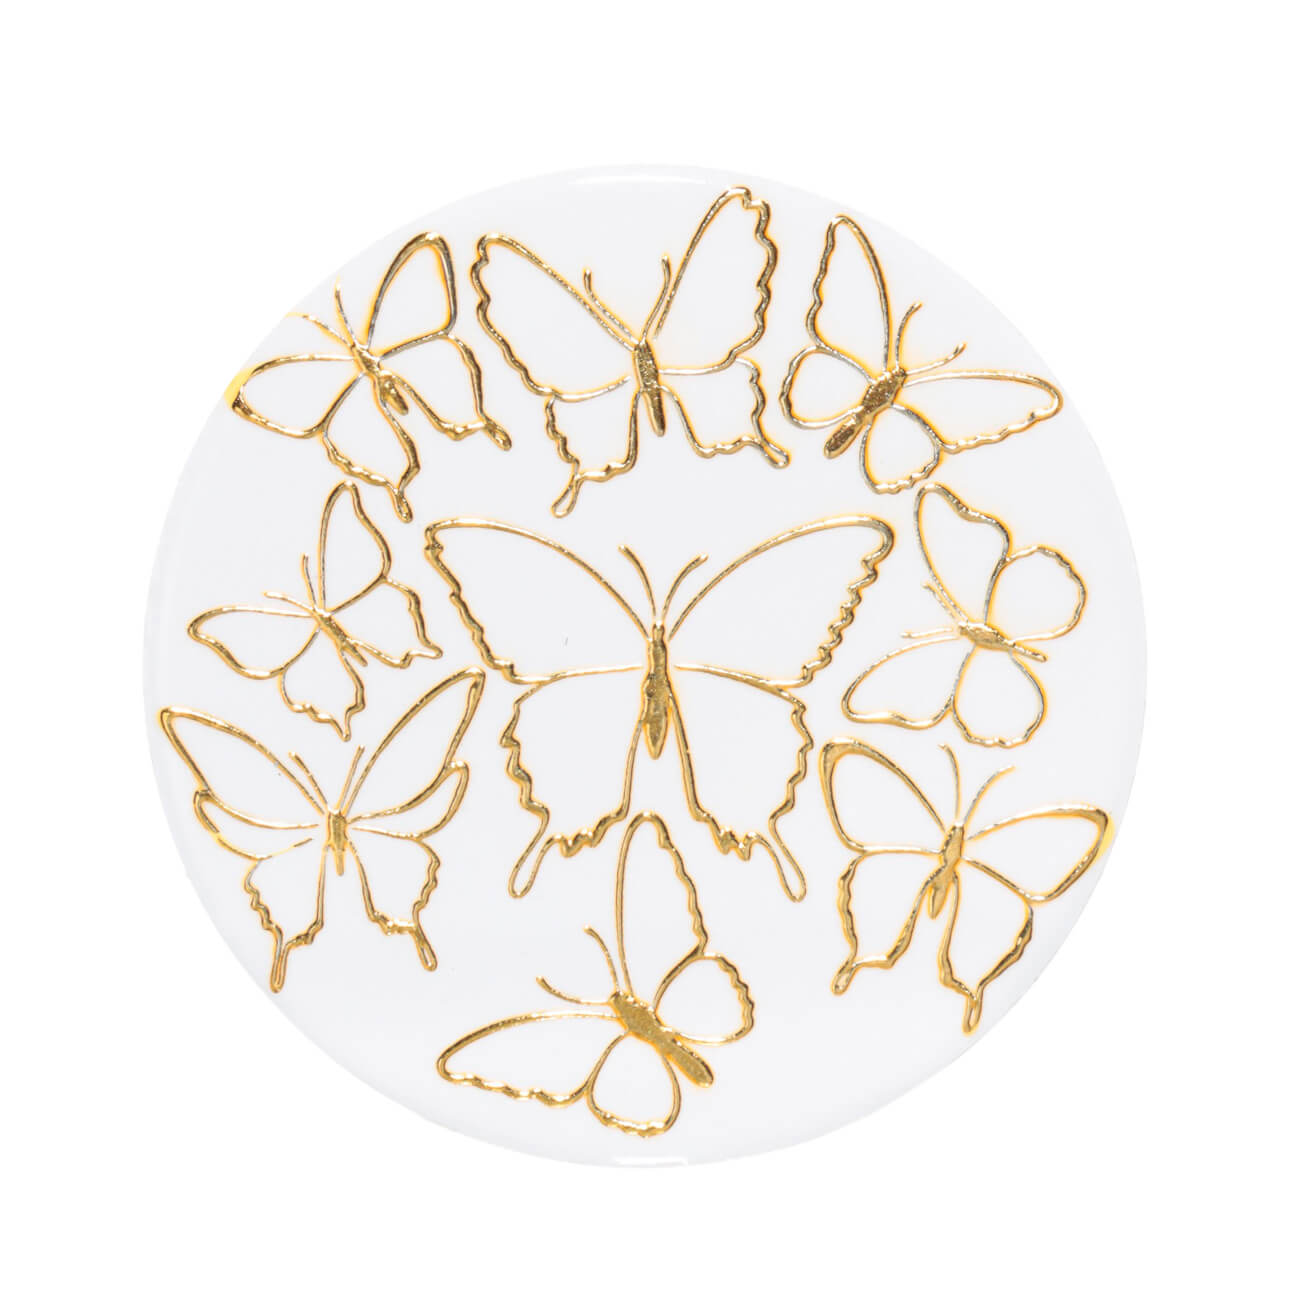 Подставка под кружку, 11 см, керамика/пробка, круглая, белая, Золотистые бабочки, Butterfly сувенир керамика подставка под кольца